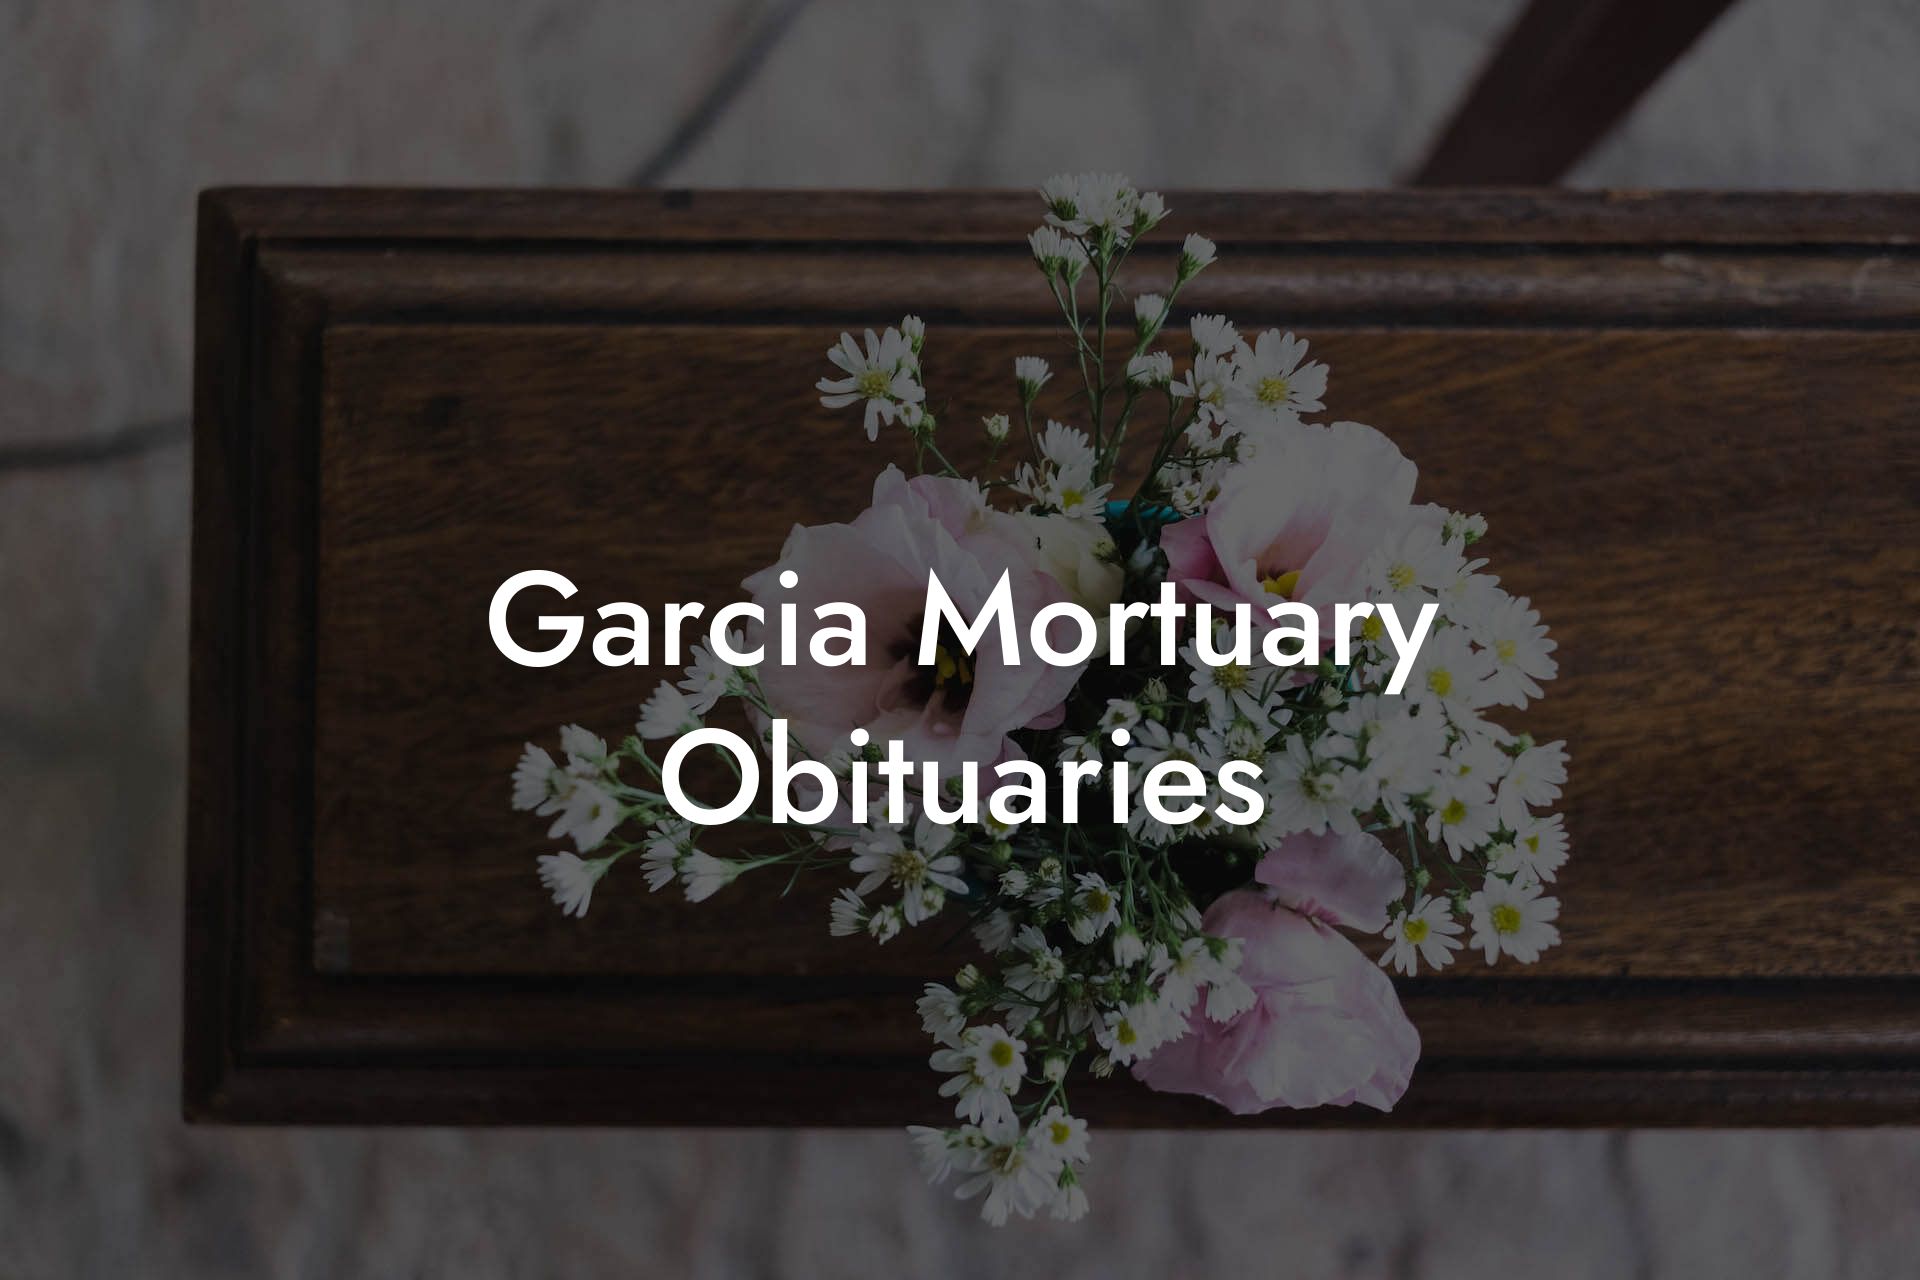 Garcia Mortuary Obituaries